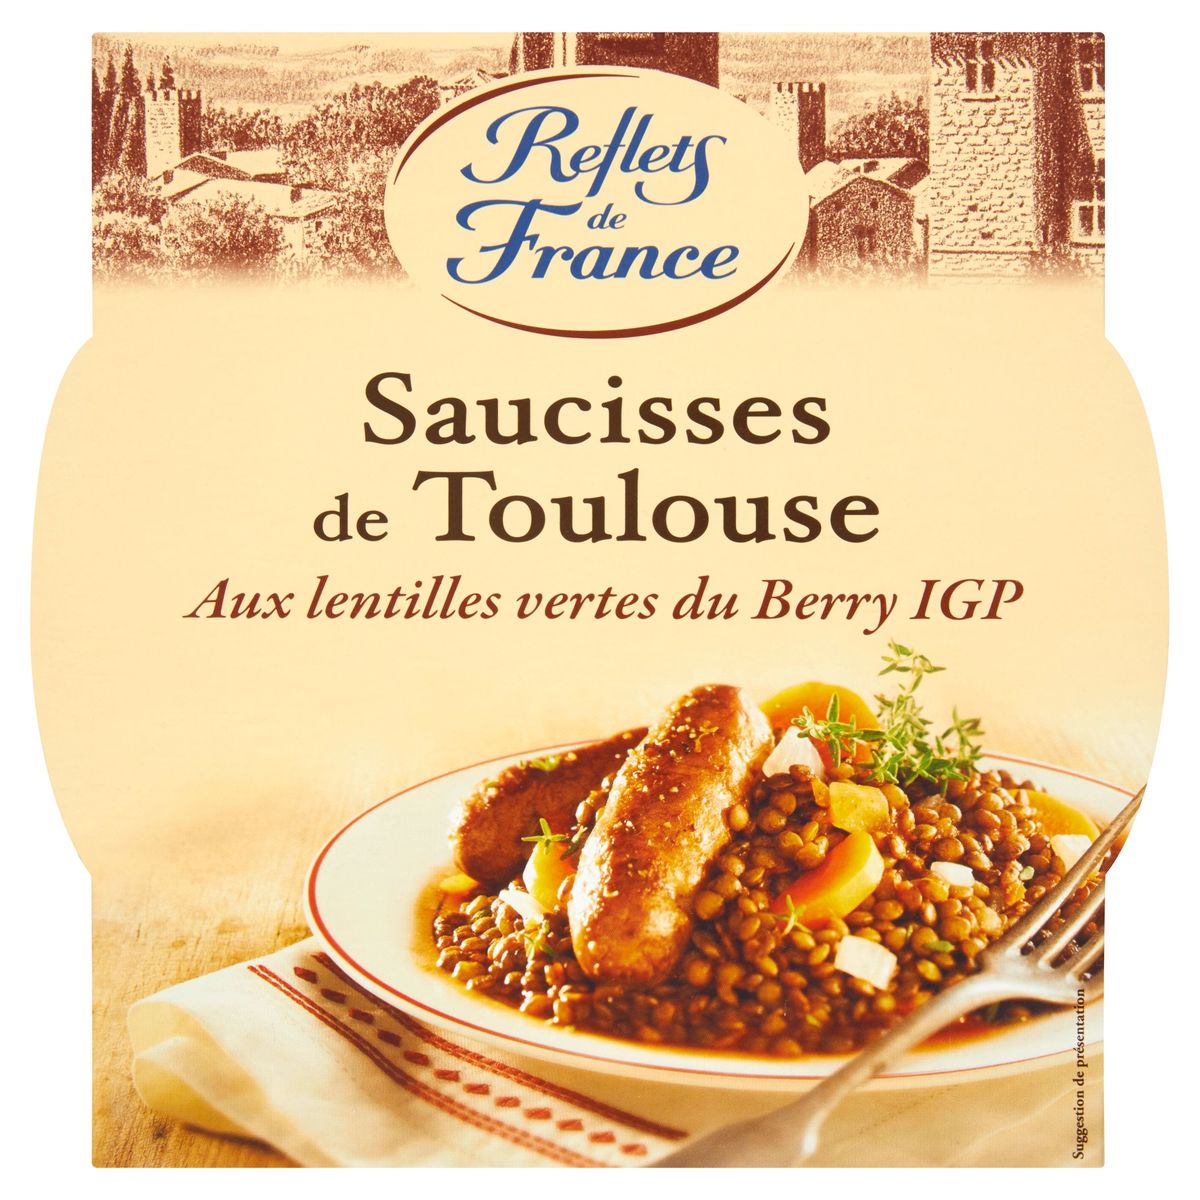 Reflets de France Saucisses de Toulouse 300 g